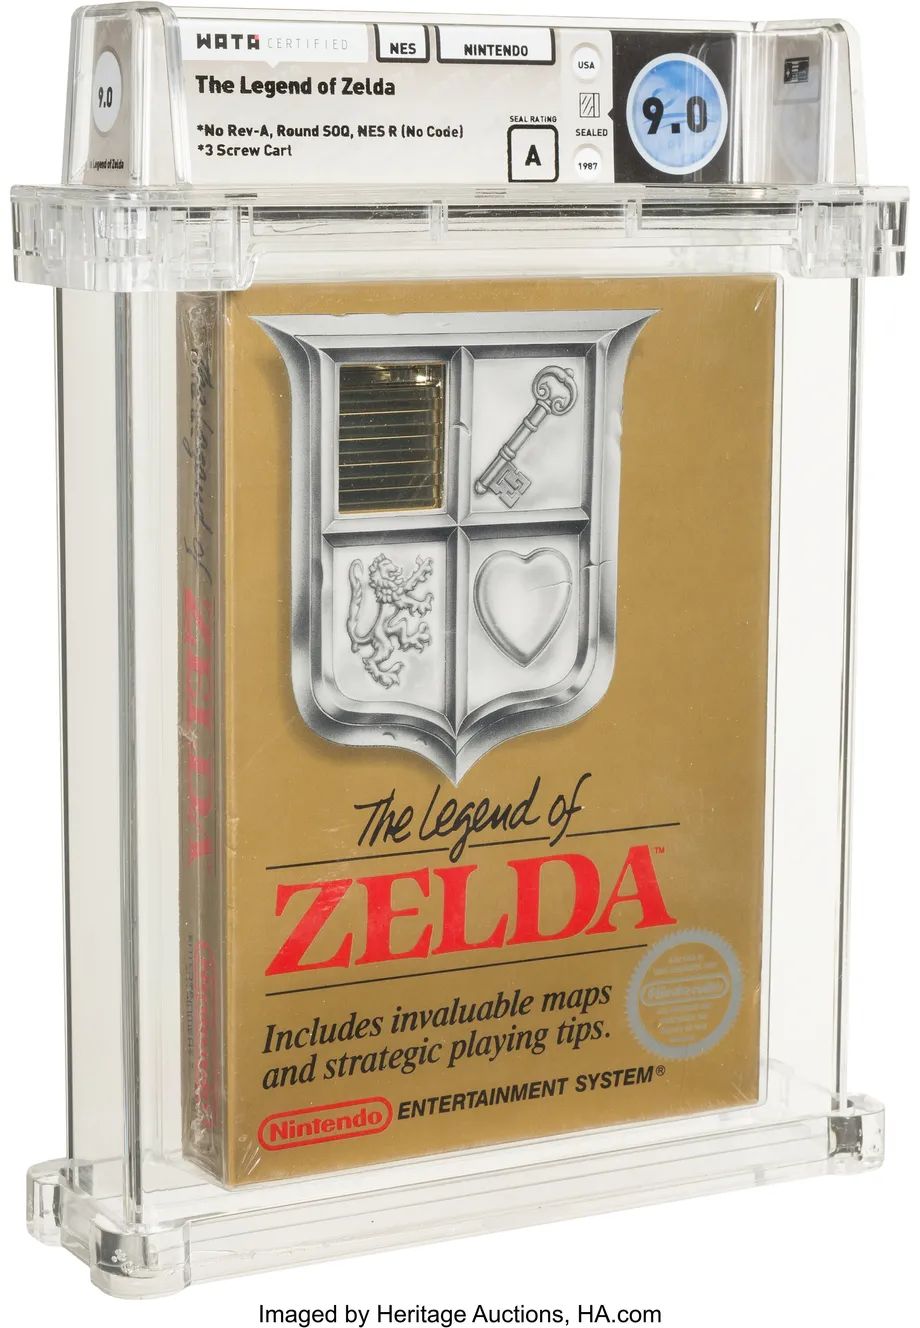 The Legend of Zelda.
Источник: Heritage Auctions